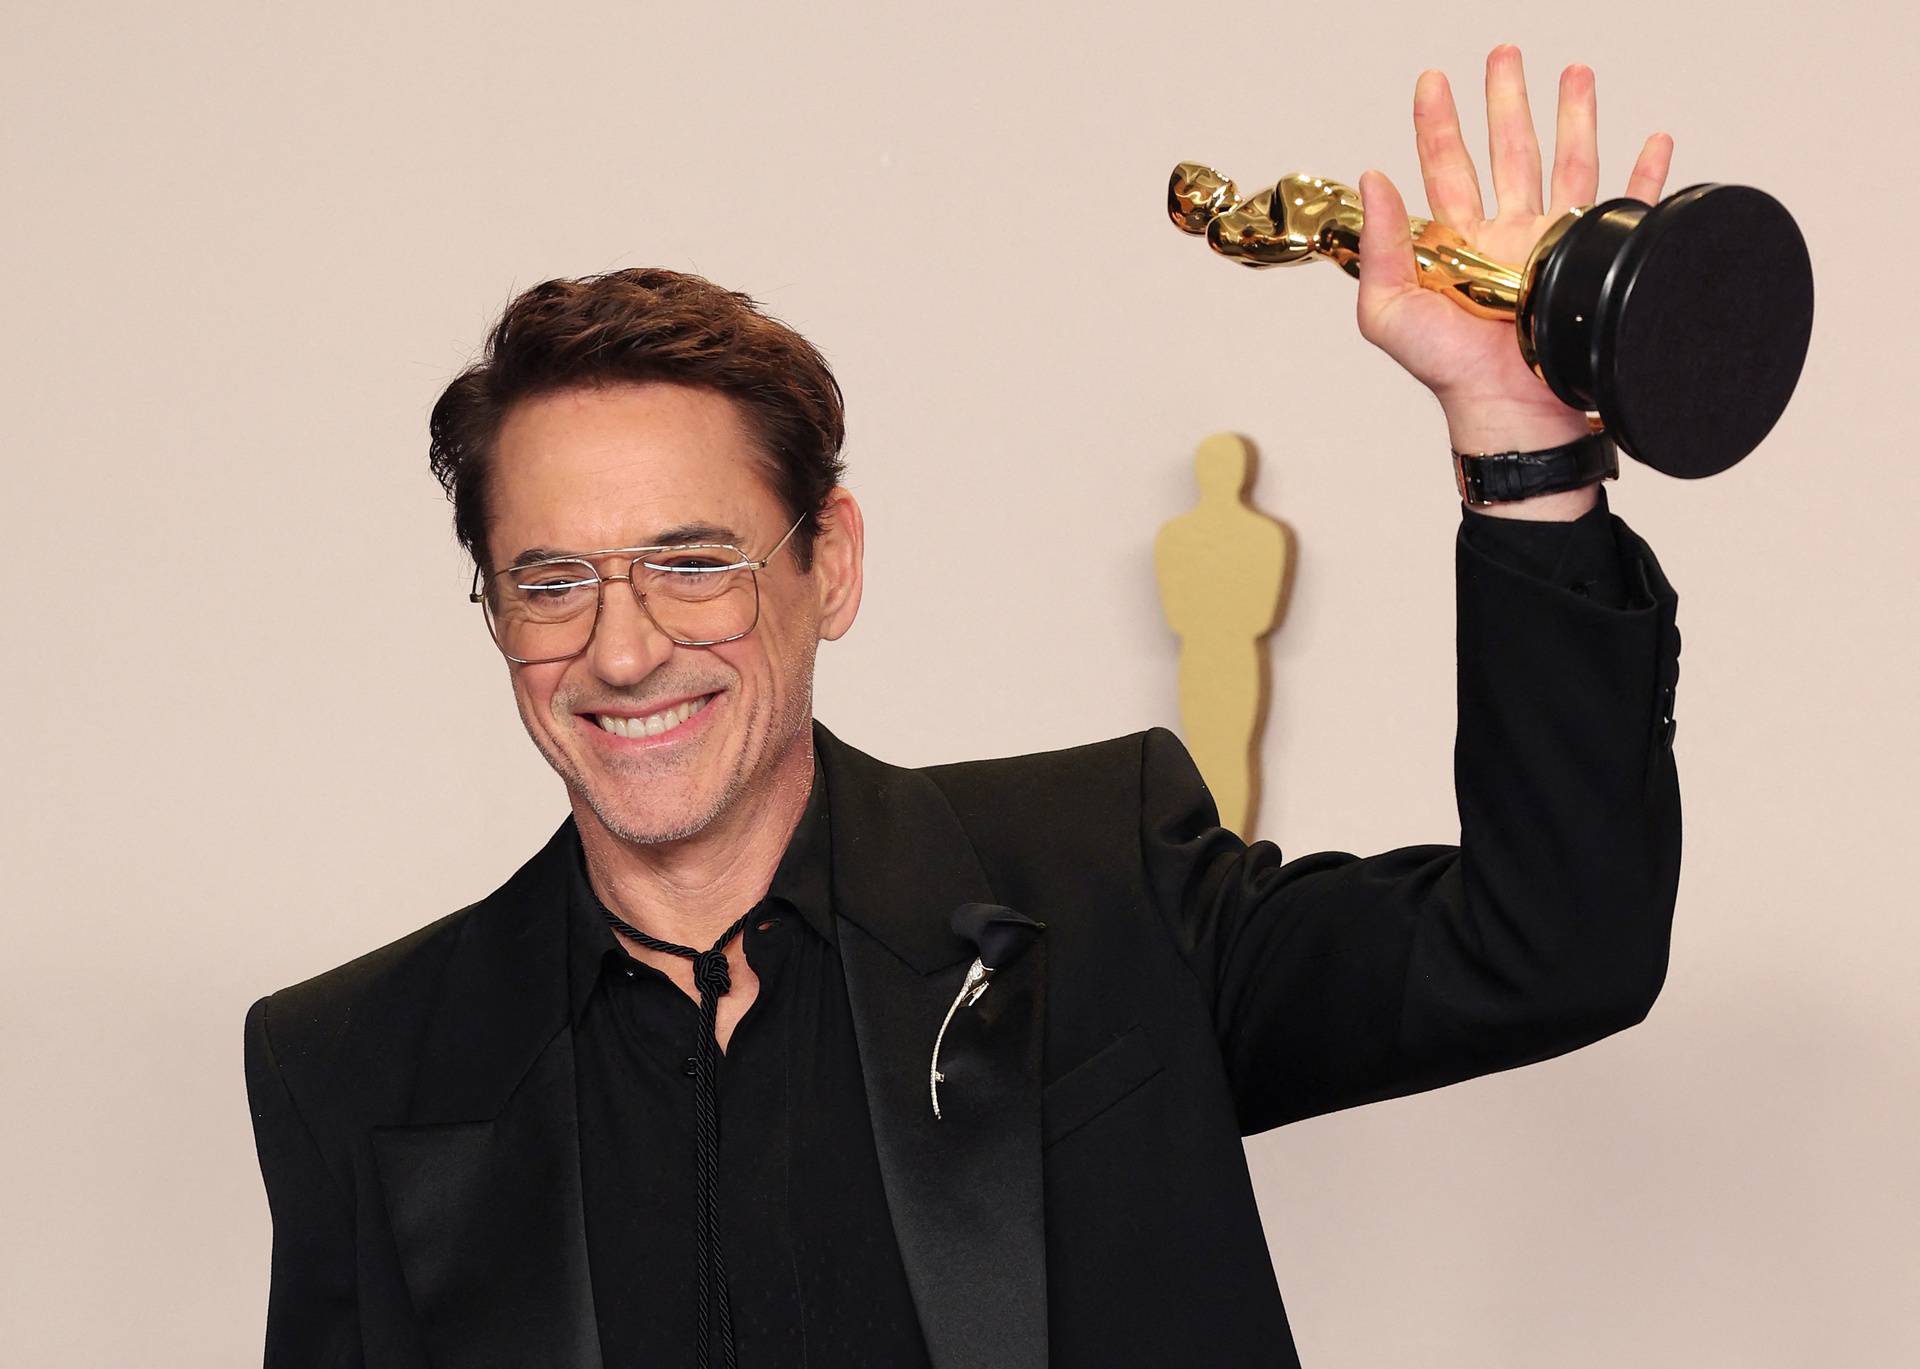 96th Academy Awards - Oscars Photo Room - Hollywood